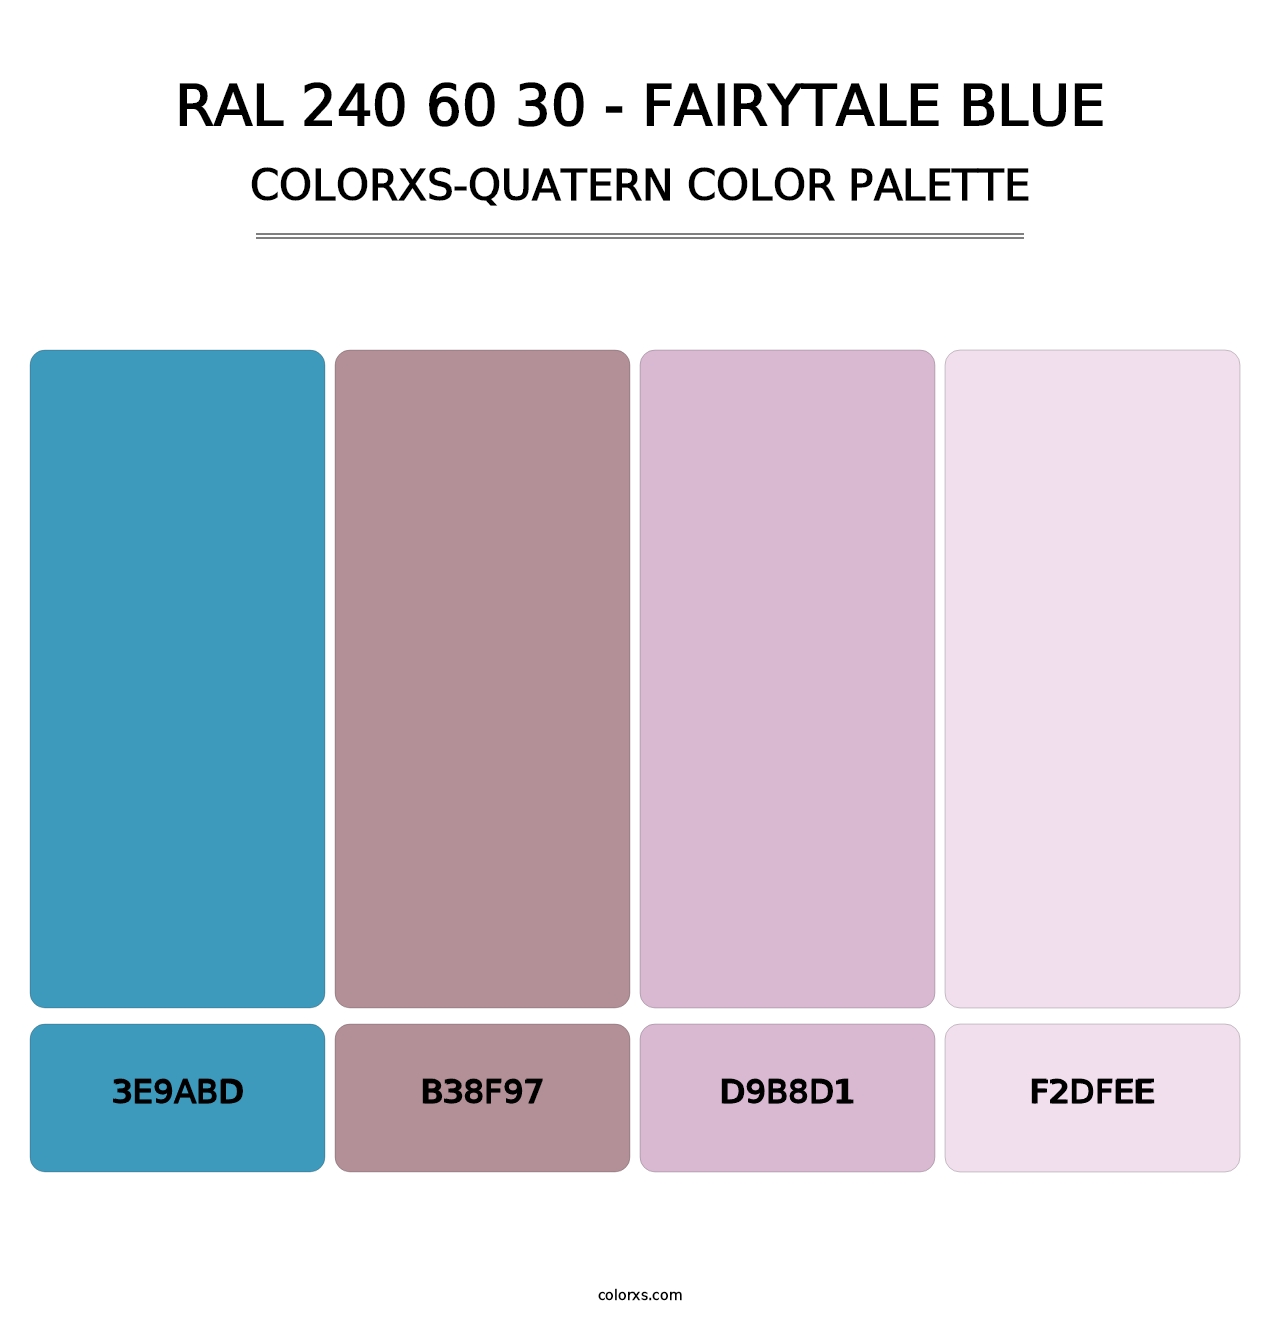 RAL 240 60 30 - Fairytale Blue - Colorxs Quatern Palette